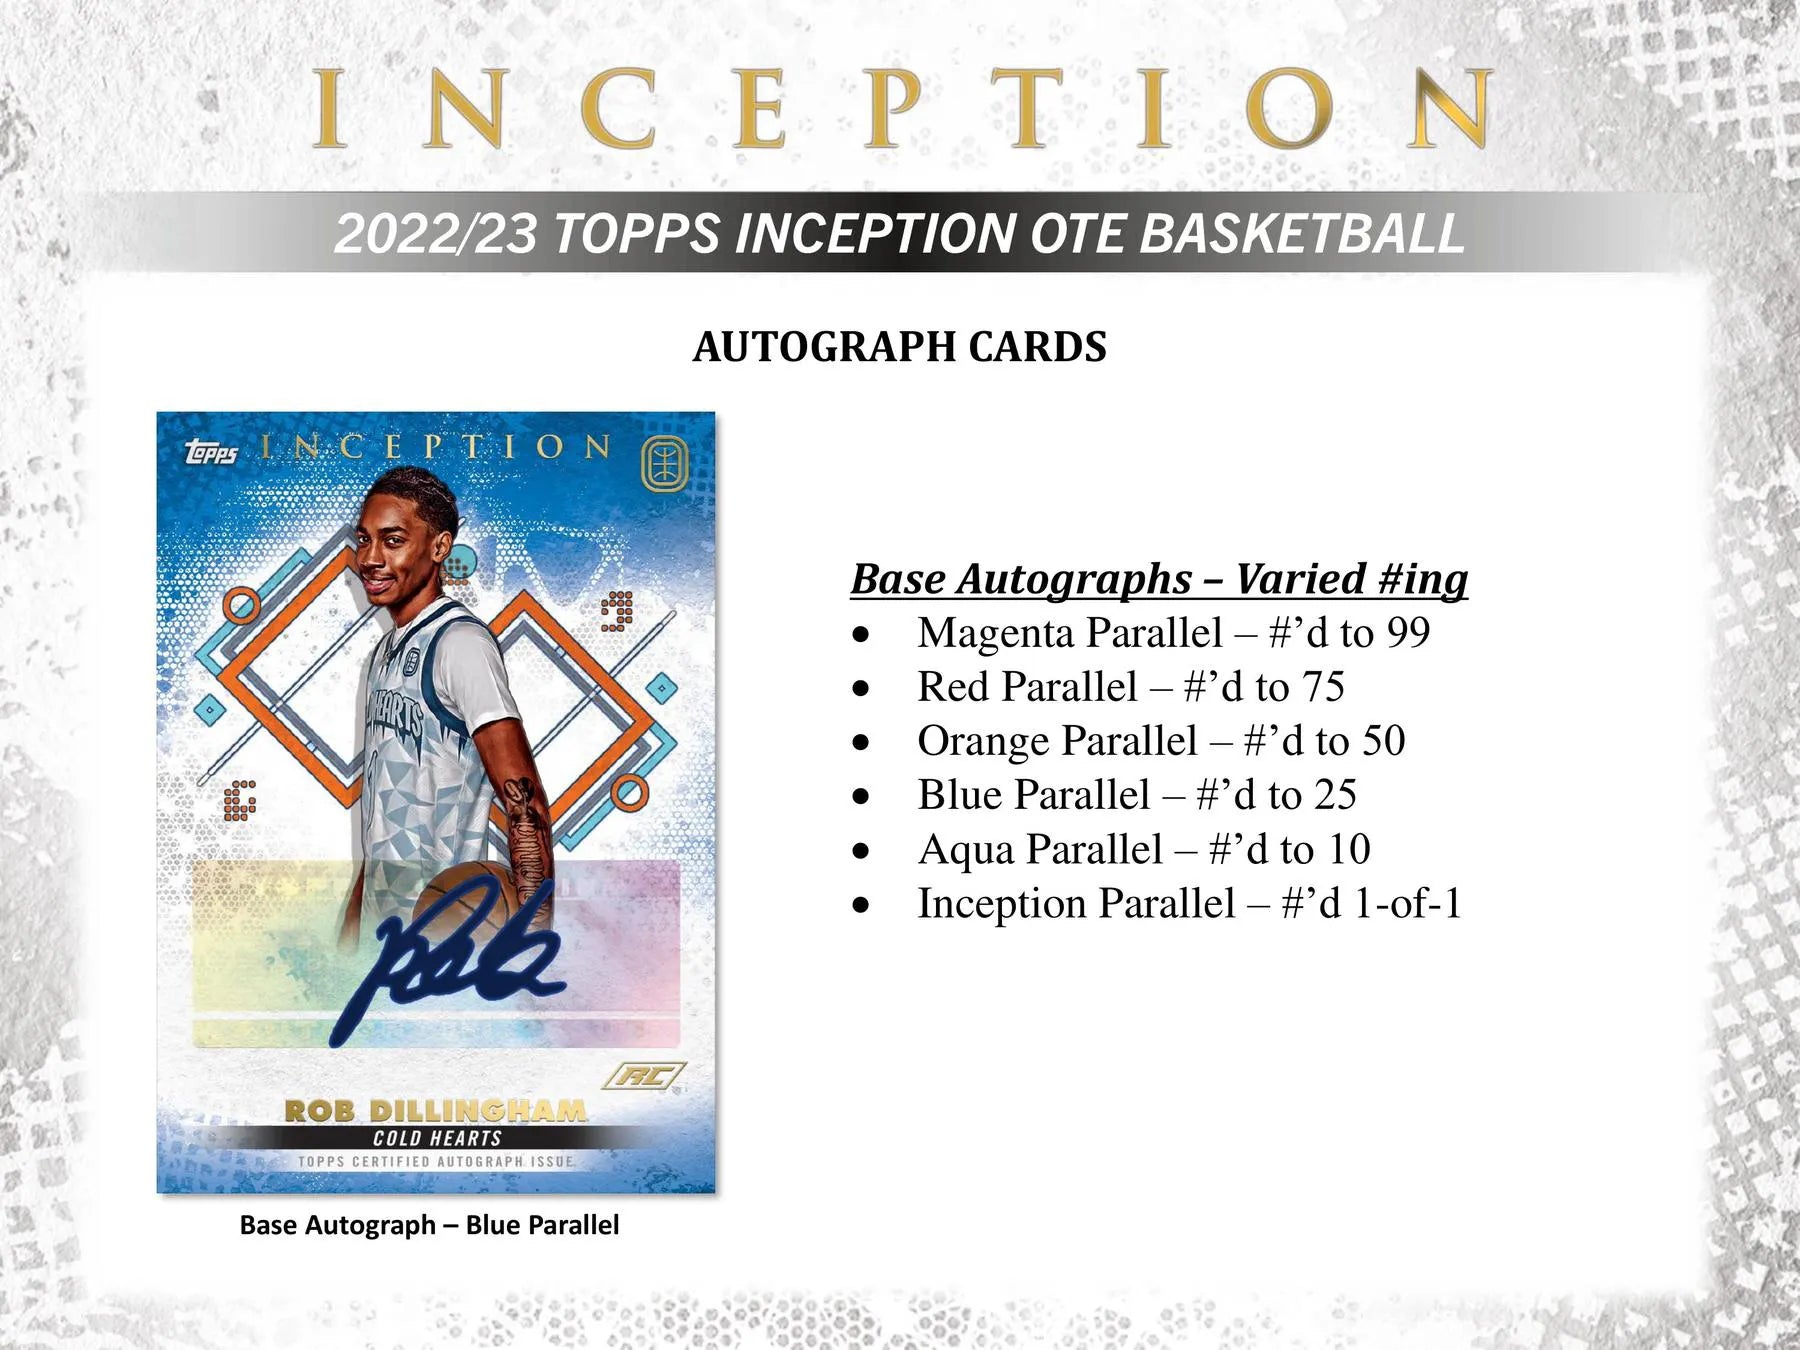 Topps Inception Overtime Elite Basketball Hobby Box - 2022/23